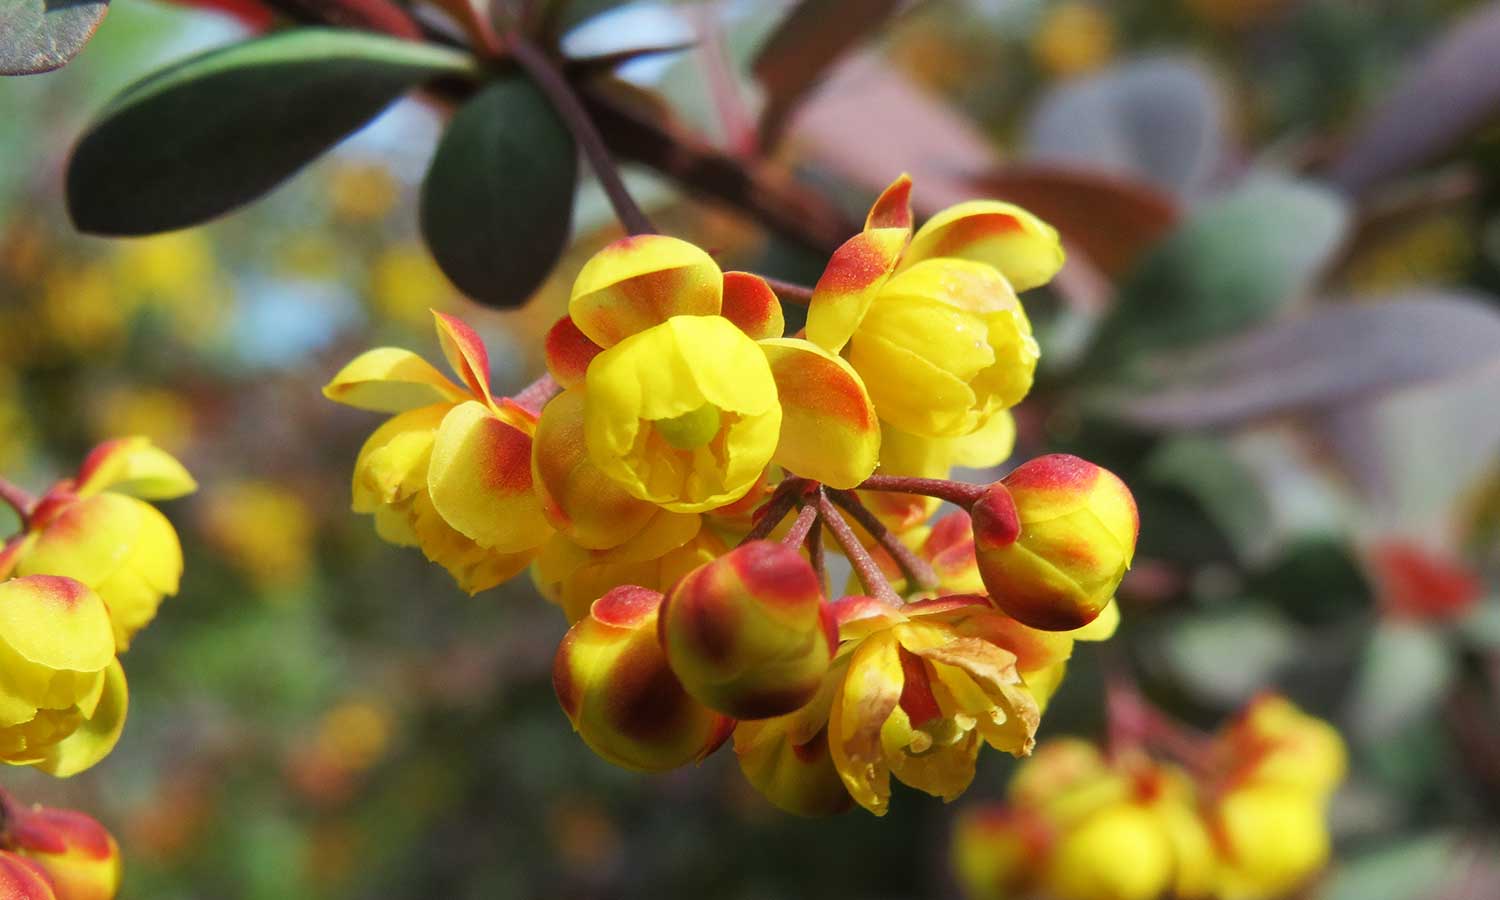 Gelb-rote Blüten einer Berberitze